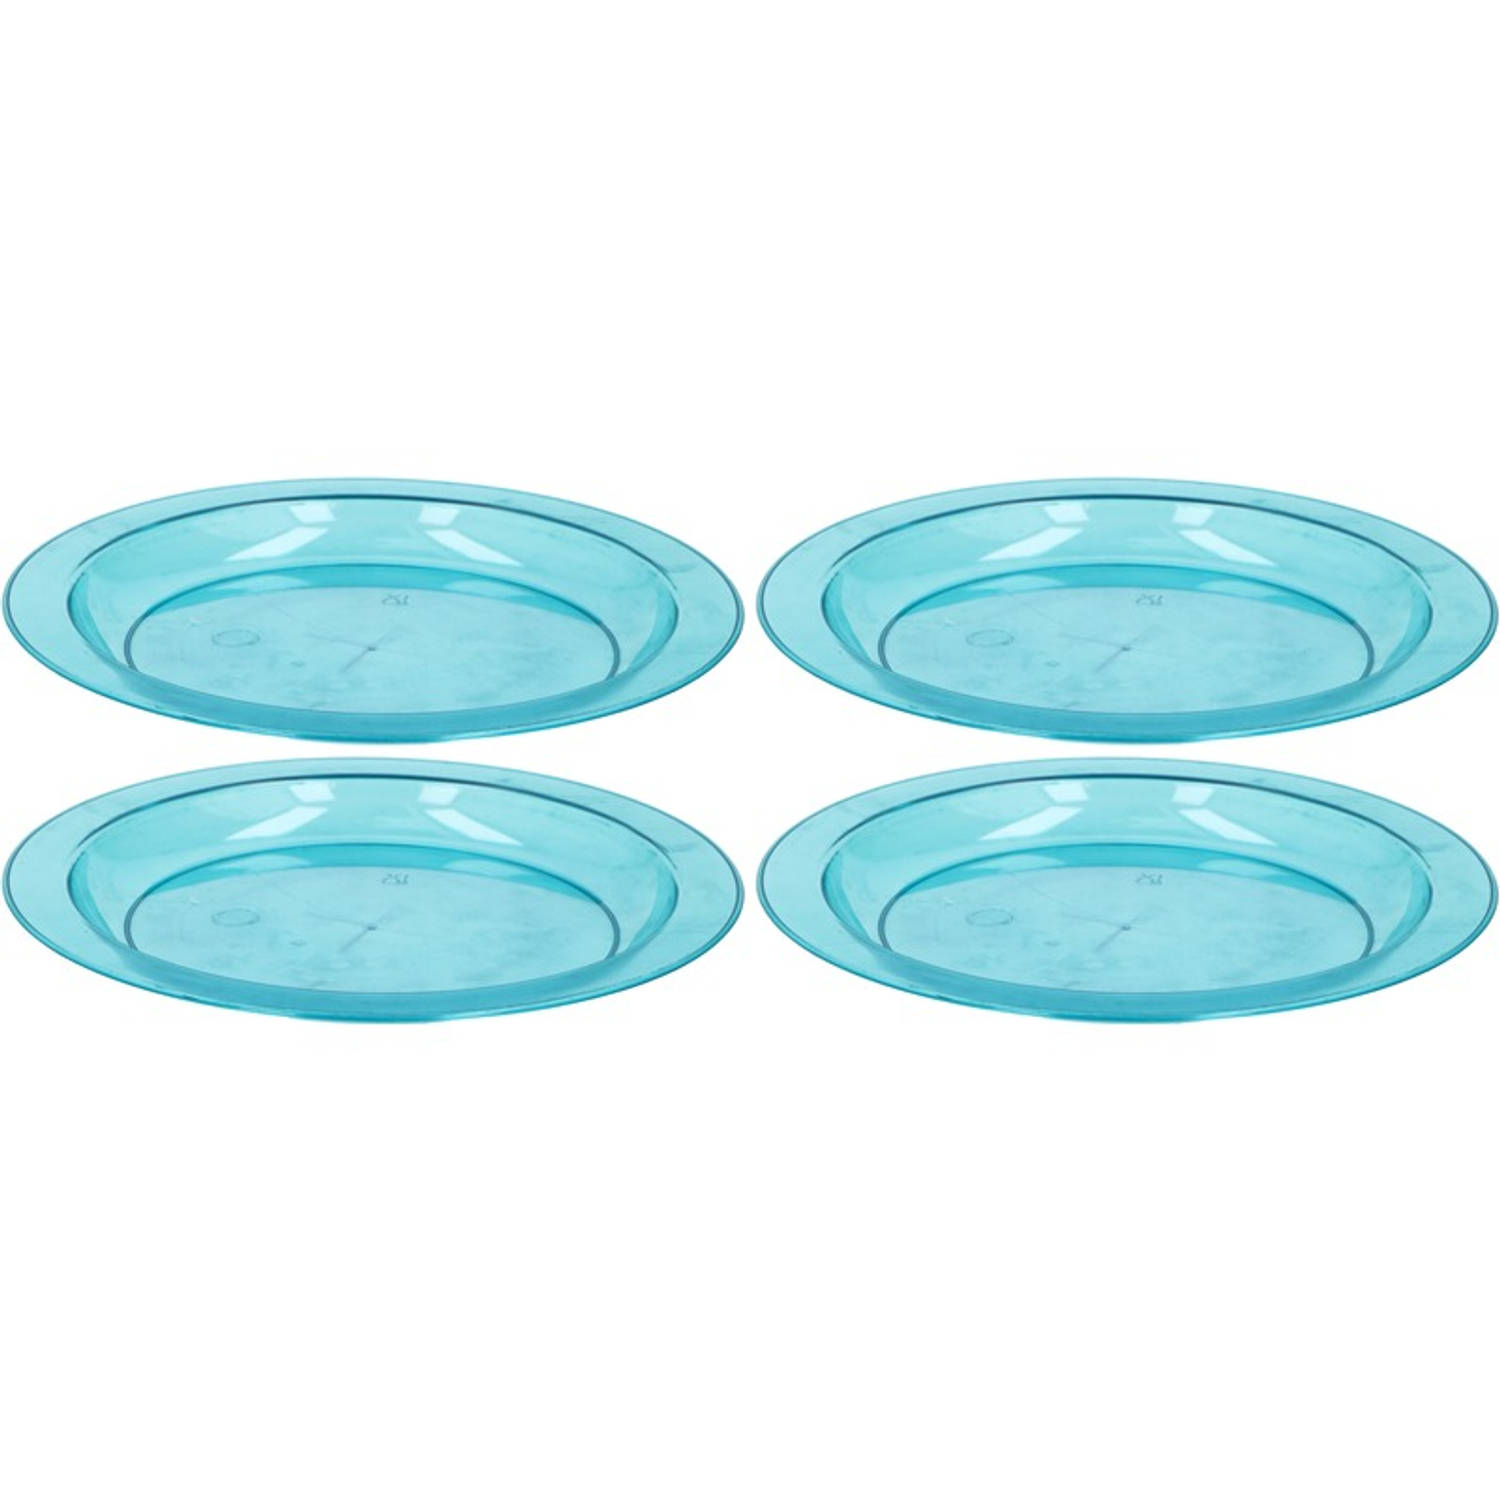 4x Blauwe plastic borden/bordjes 20 - Bordjes Blokker